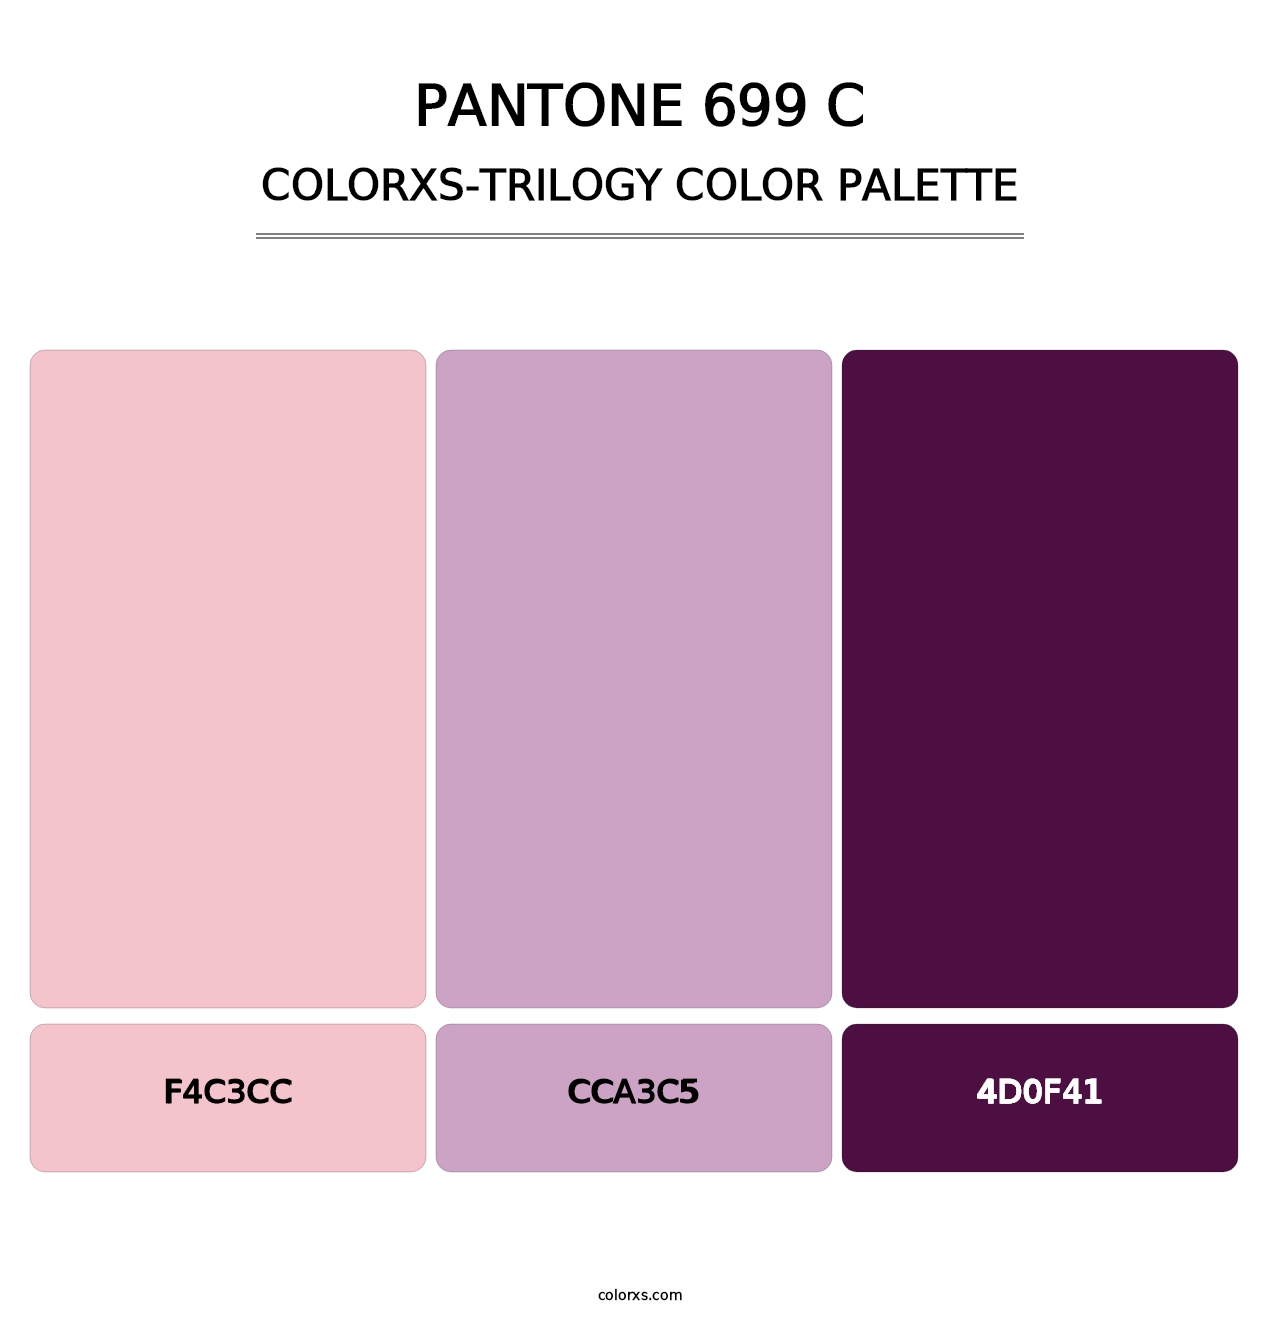 PANTONE 699 C - Colorxs Trilogy Palette